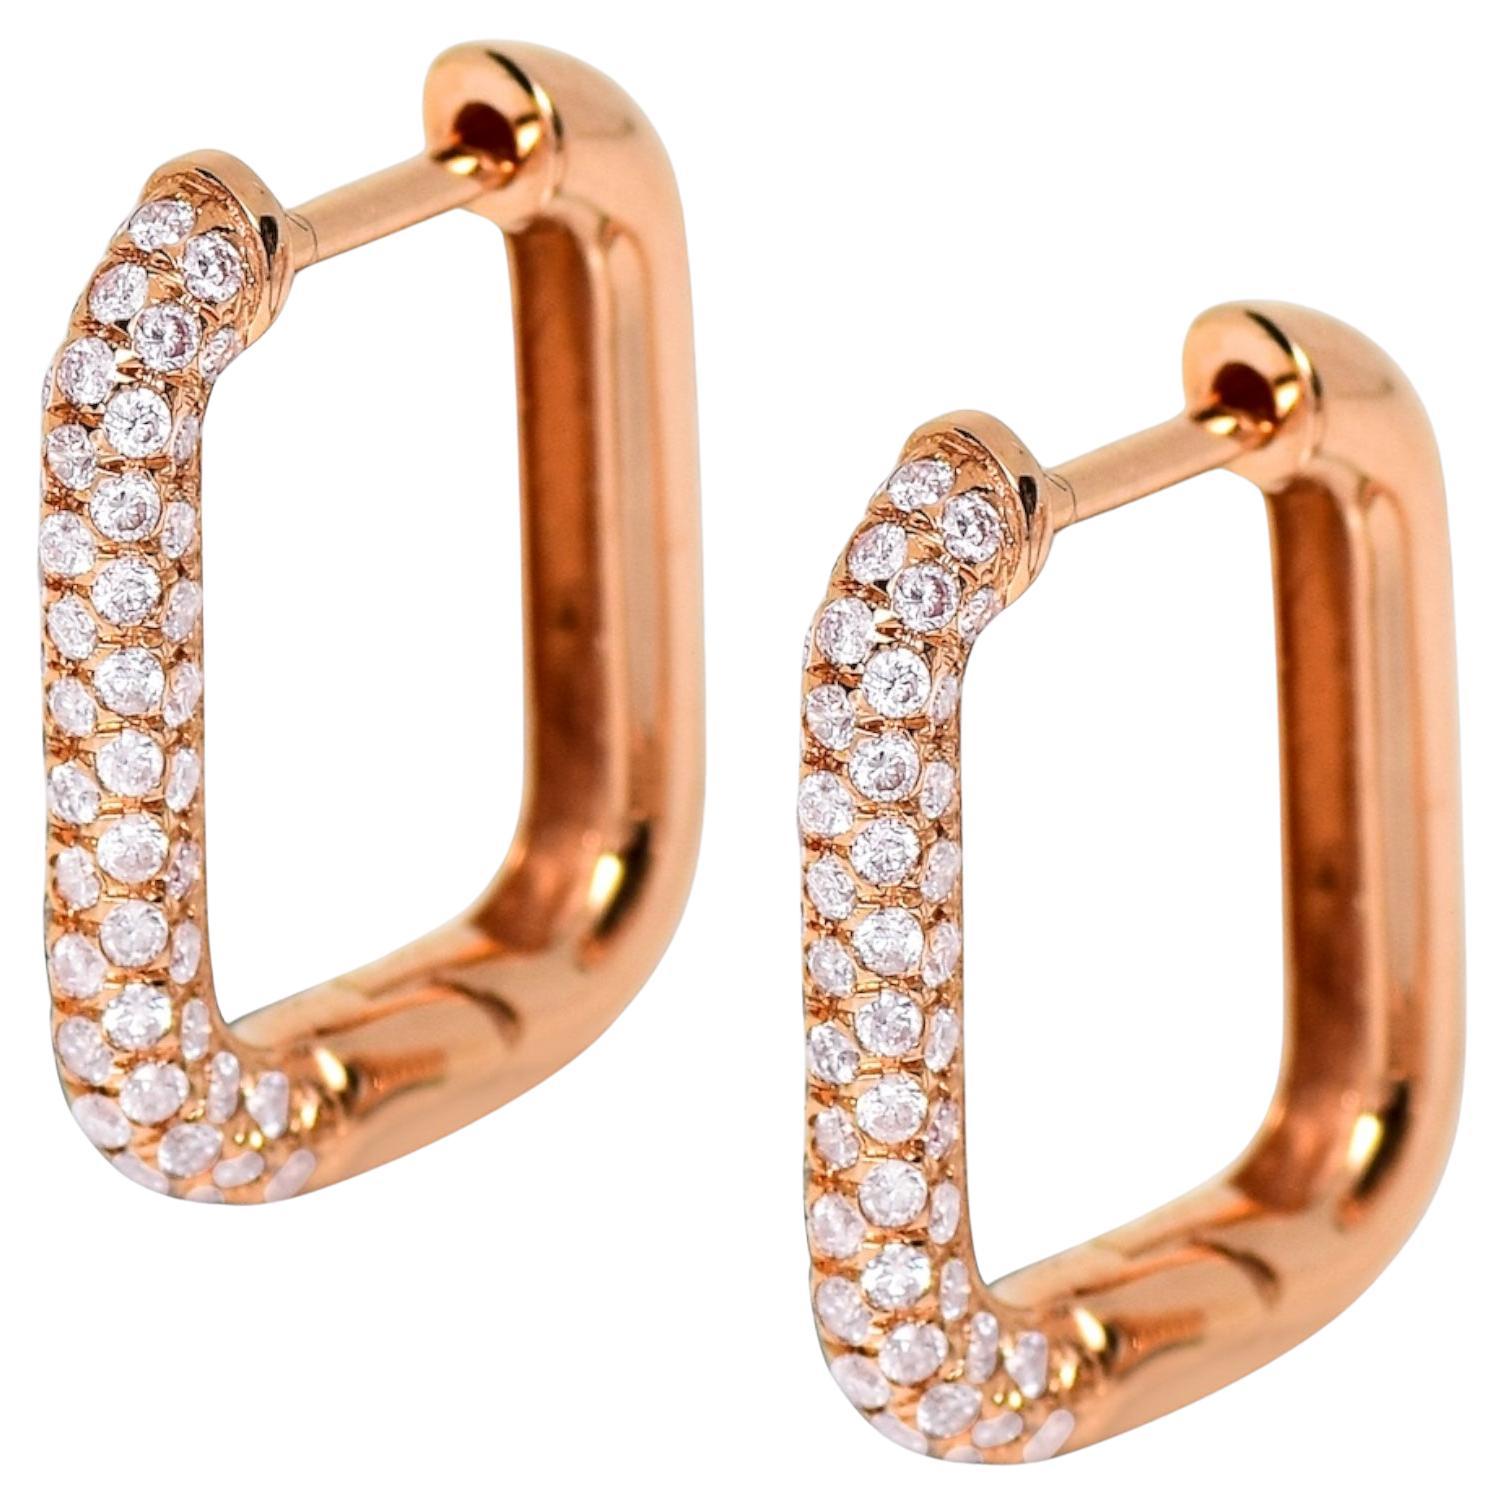 IGI 14K 0.59 ct Natural Pink Diamonds Hoop Earrings For Sale